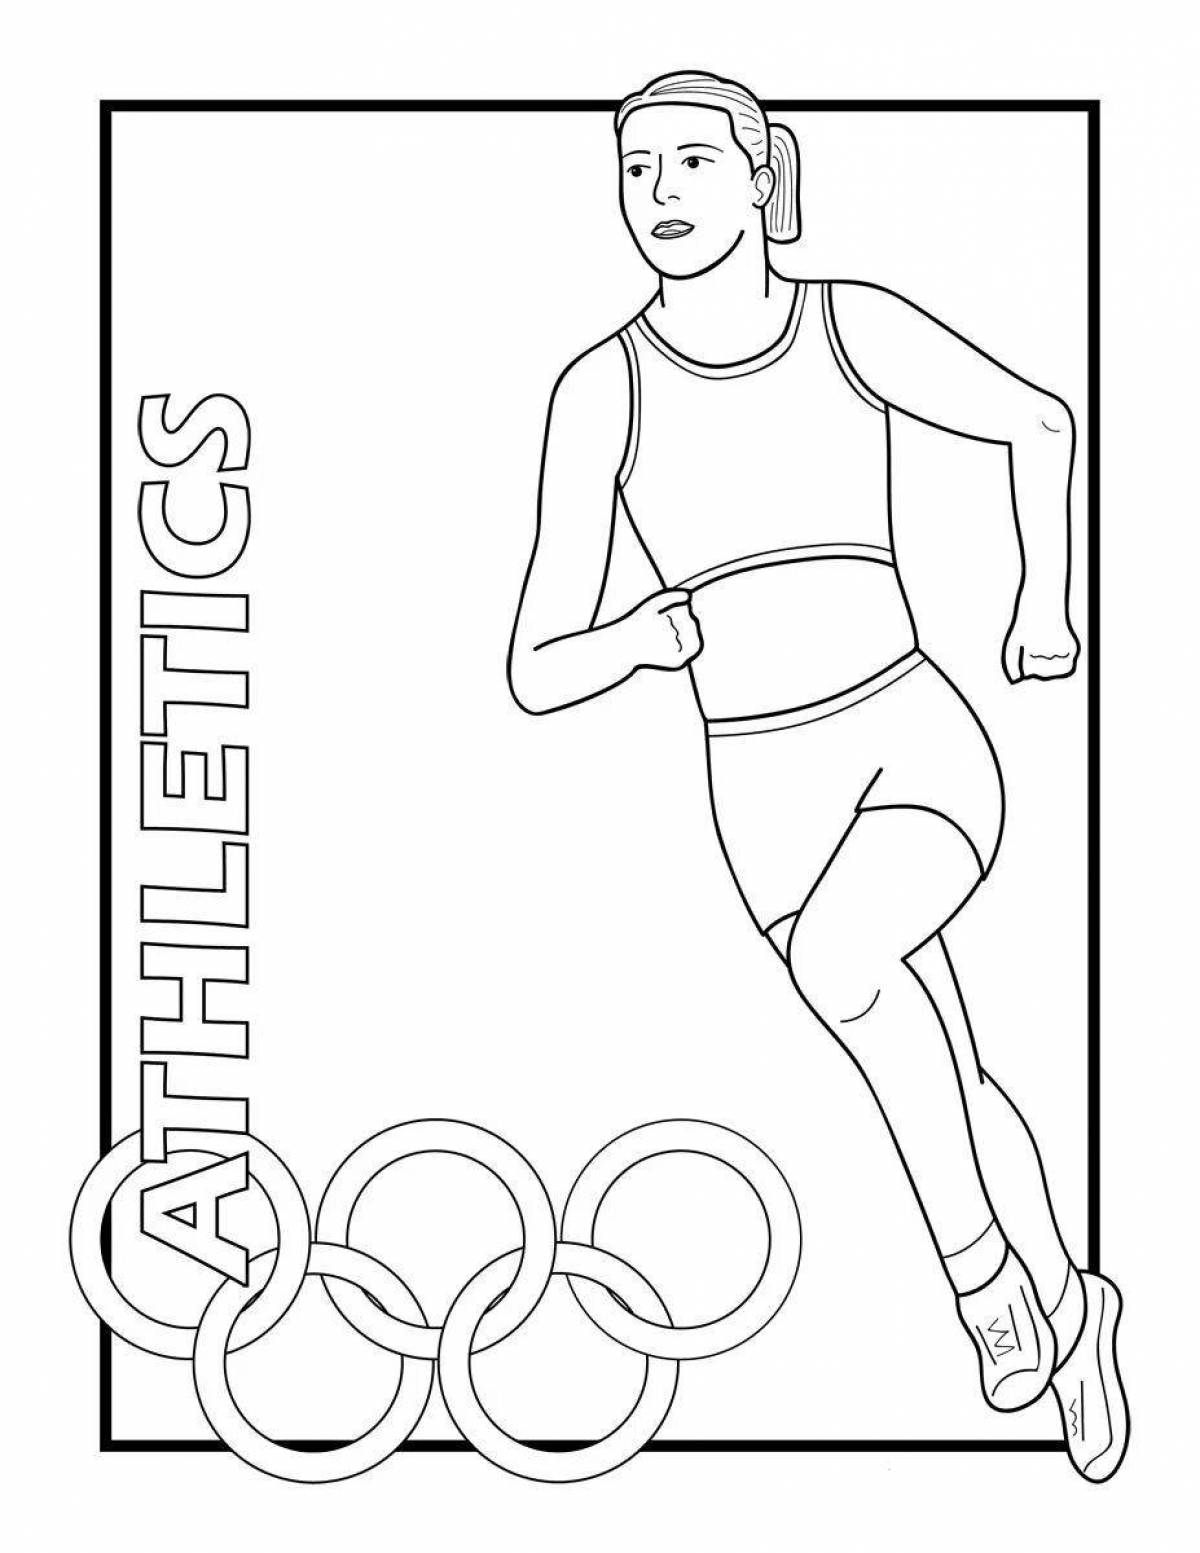 Олимпийские игры рисунок легко. Олимпийские игры рисунок. Рисунок на спортивную тему. Раскраска: спортсмены. Раскраска Олимпийские игры.